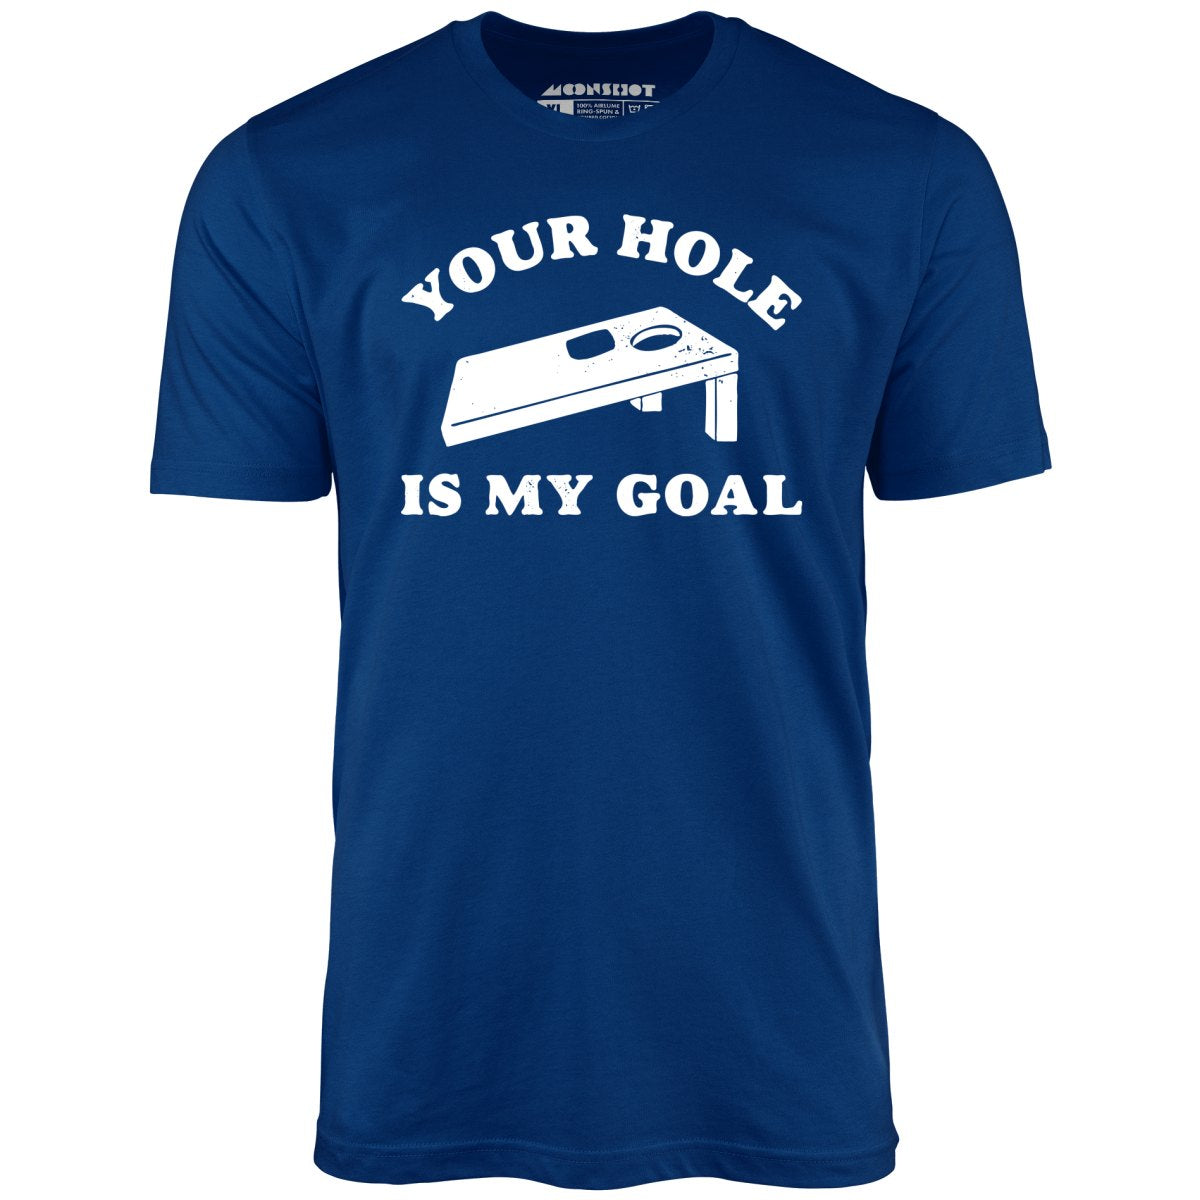 Your Hole is My Goal - Cornhole - Unisex T-Shirt